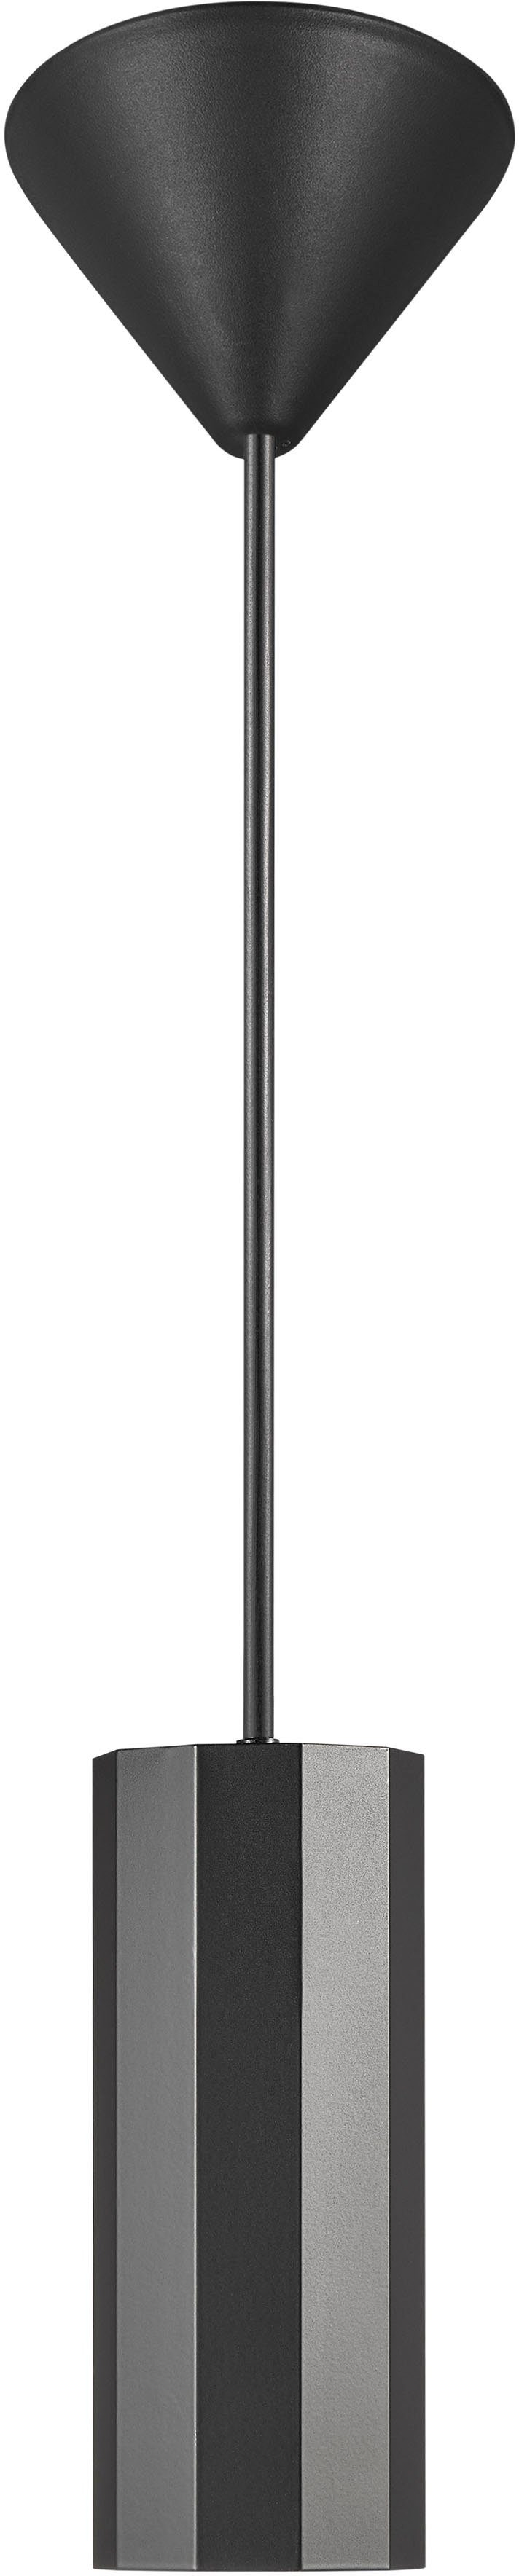 Nordlux Pendelleuchte Alanis, Leuchtmittel, 10 Lampenkopf -seitiges Profil, Messing-Look, matter Ein-/Aus-Schalter am Design, Minimalistisches oben ohne